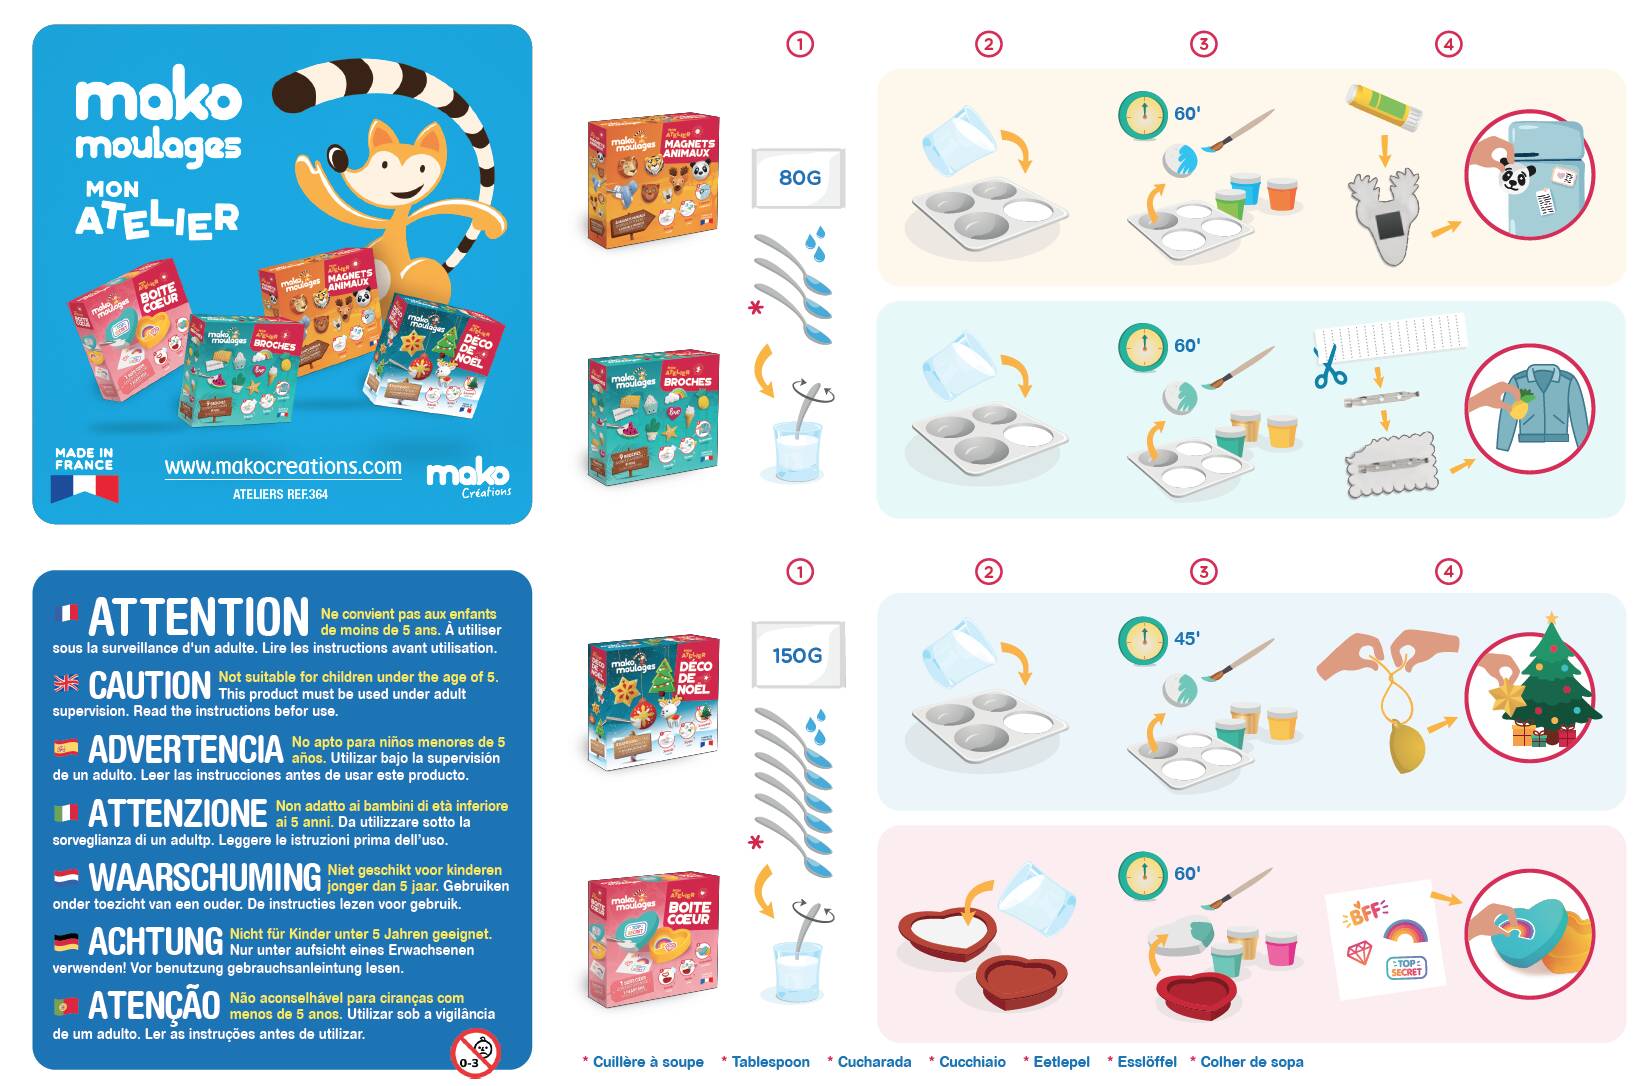 Kit Créatif Mon Atelier Magnets Animaux - Mako Moulages pour l'anniversaire  de votre enfant - Annikids